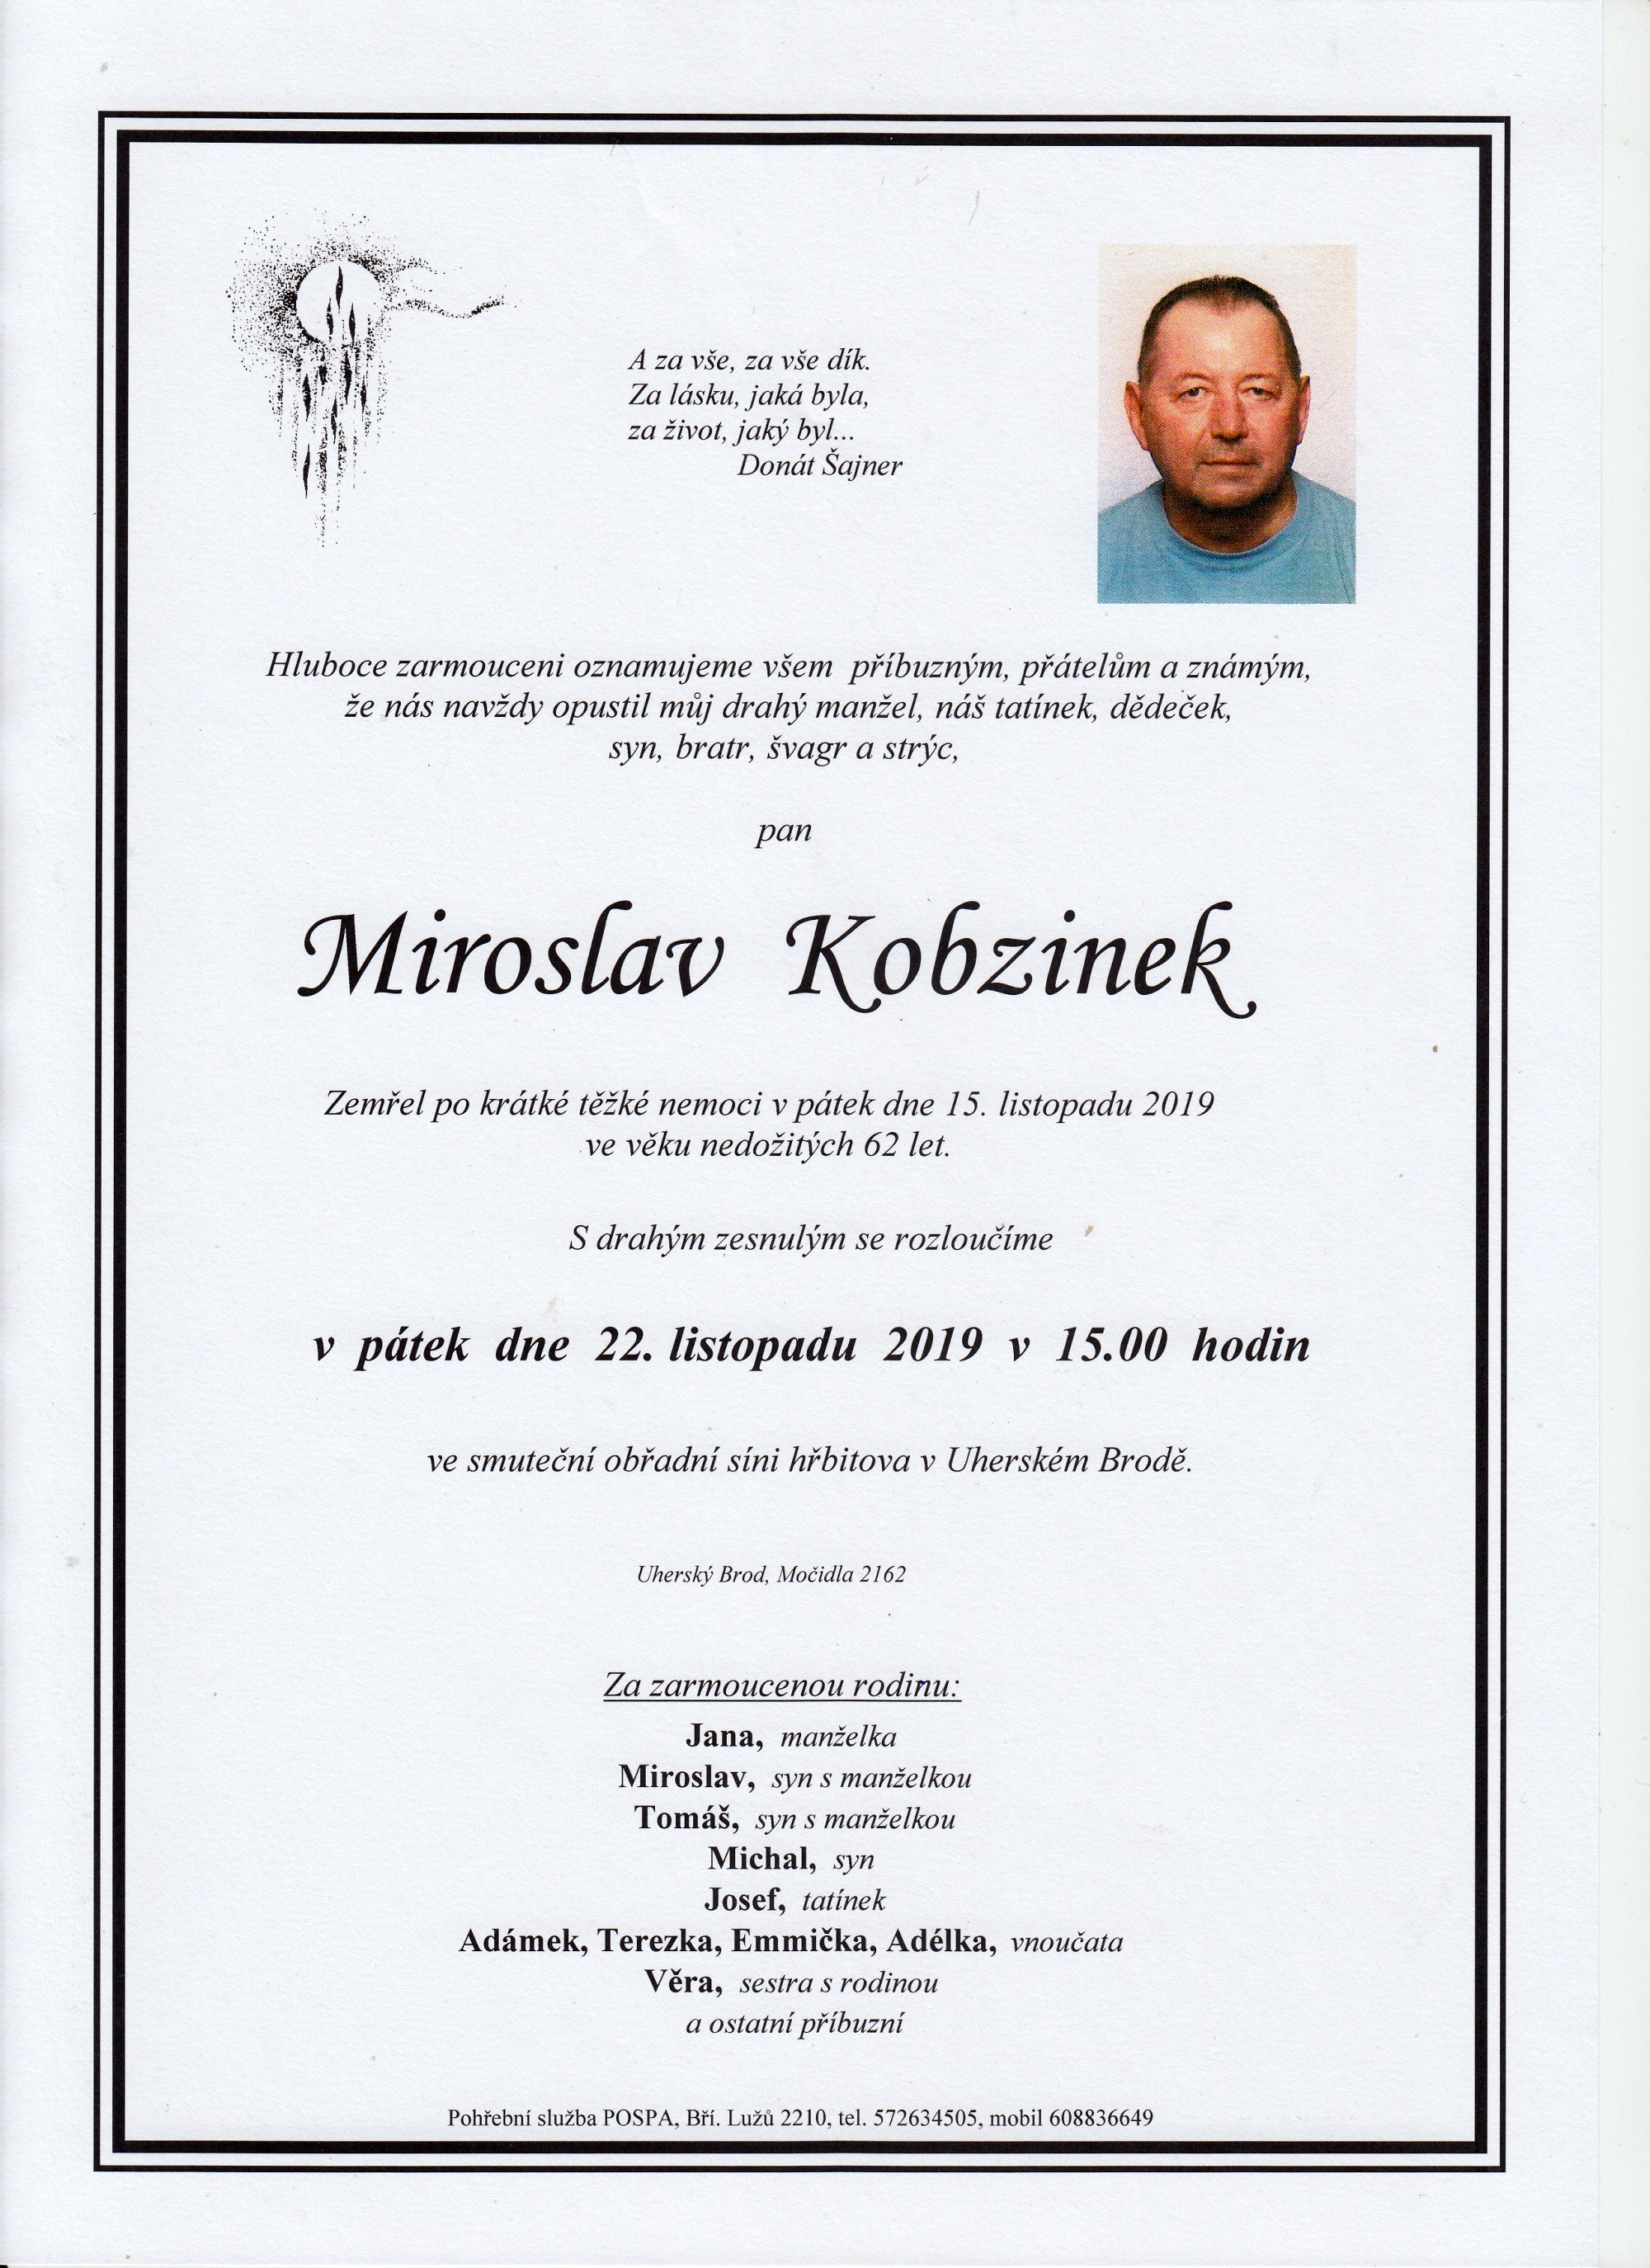 Miroslav Kobzinek